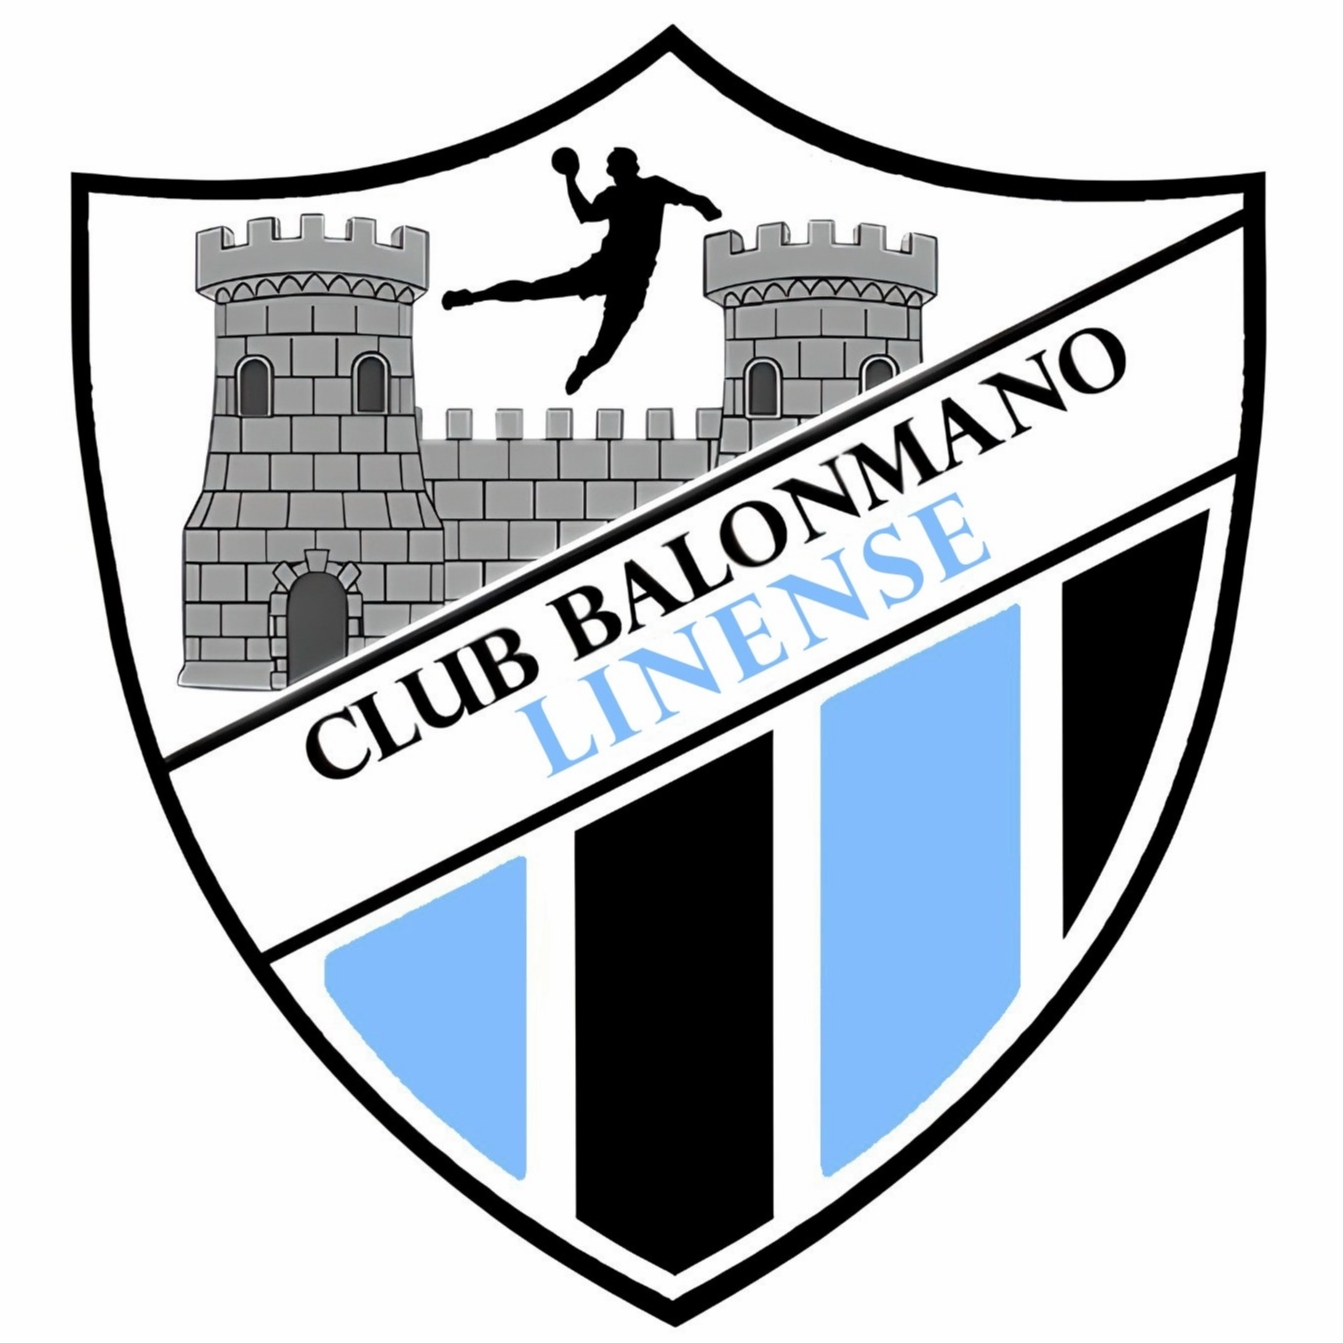 CLUB BALONMANO LINENSE